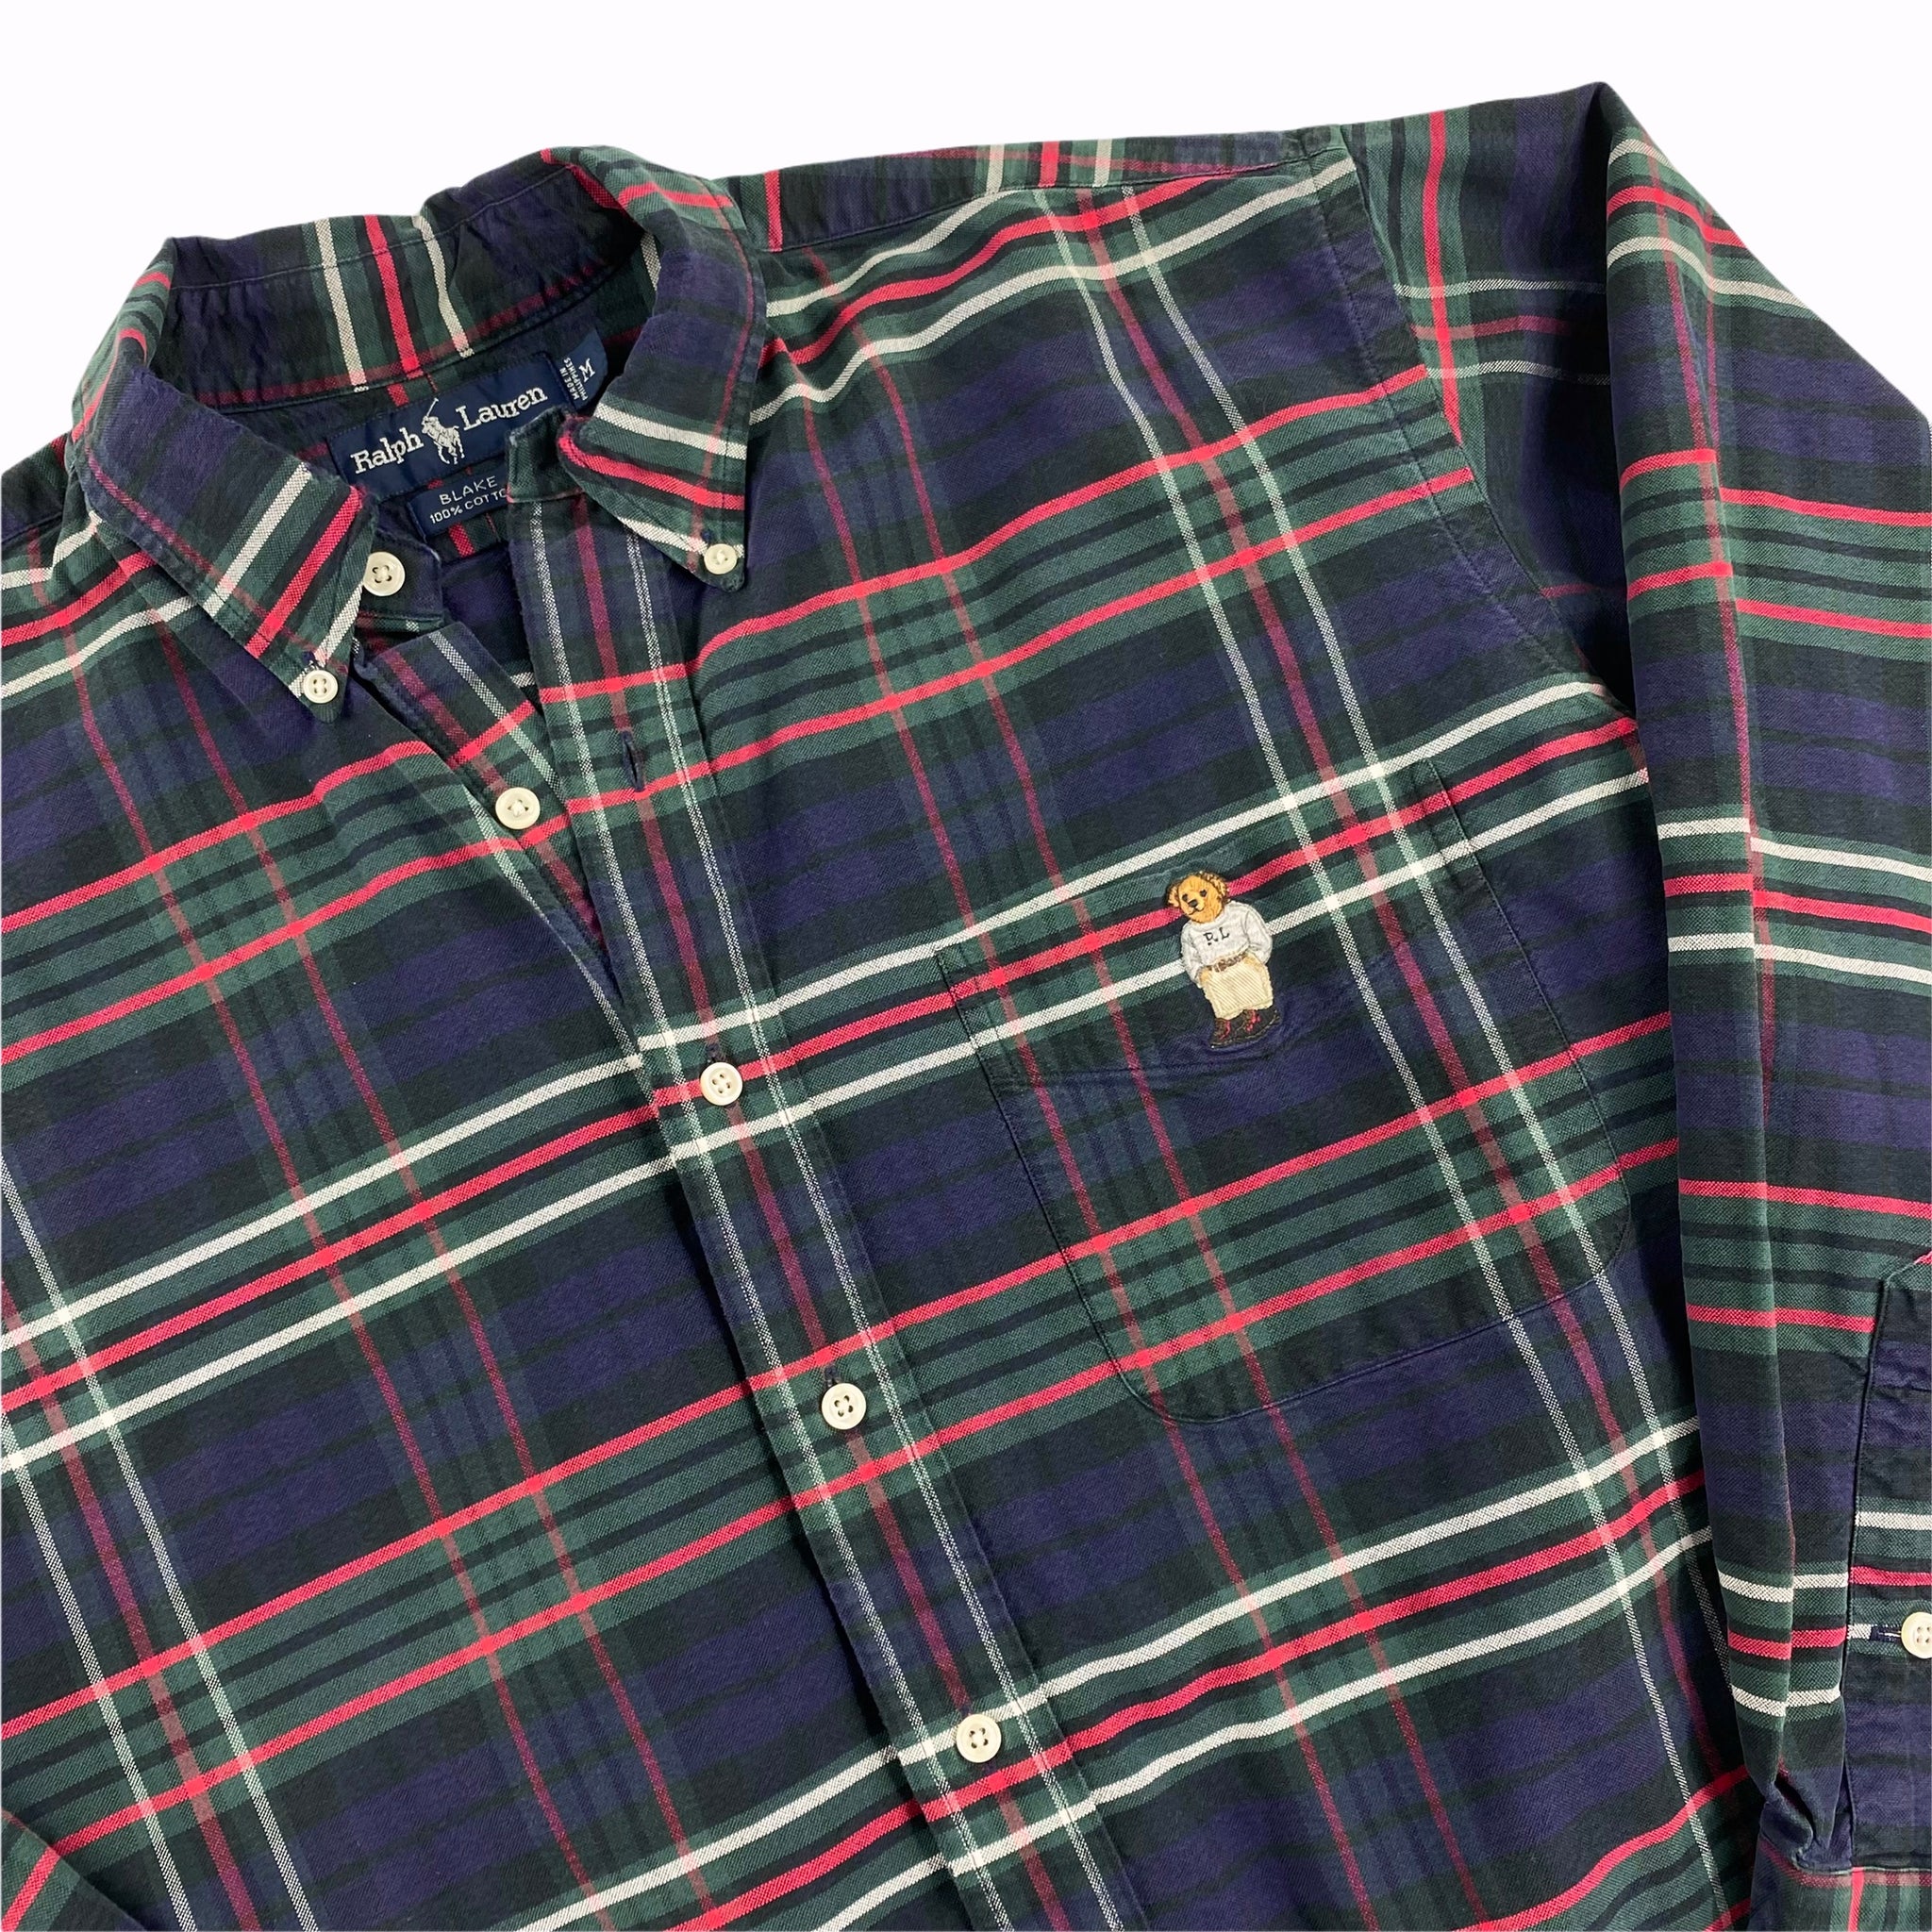 Polo ralph lauren tartan bear button down shirt medium